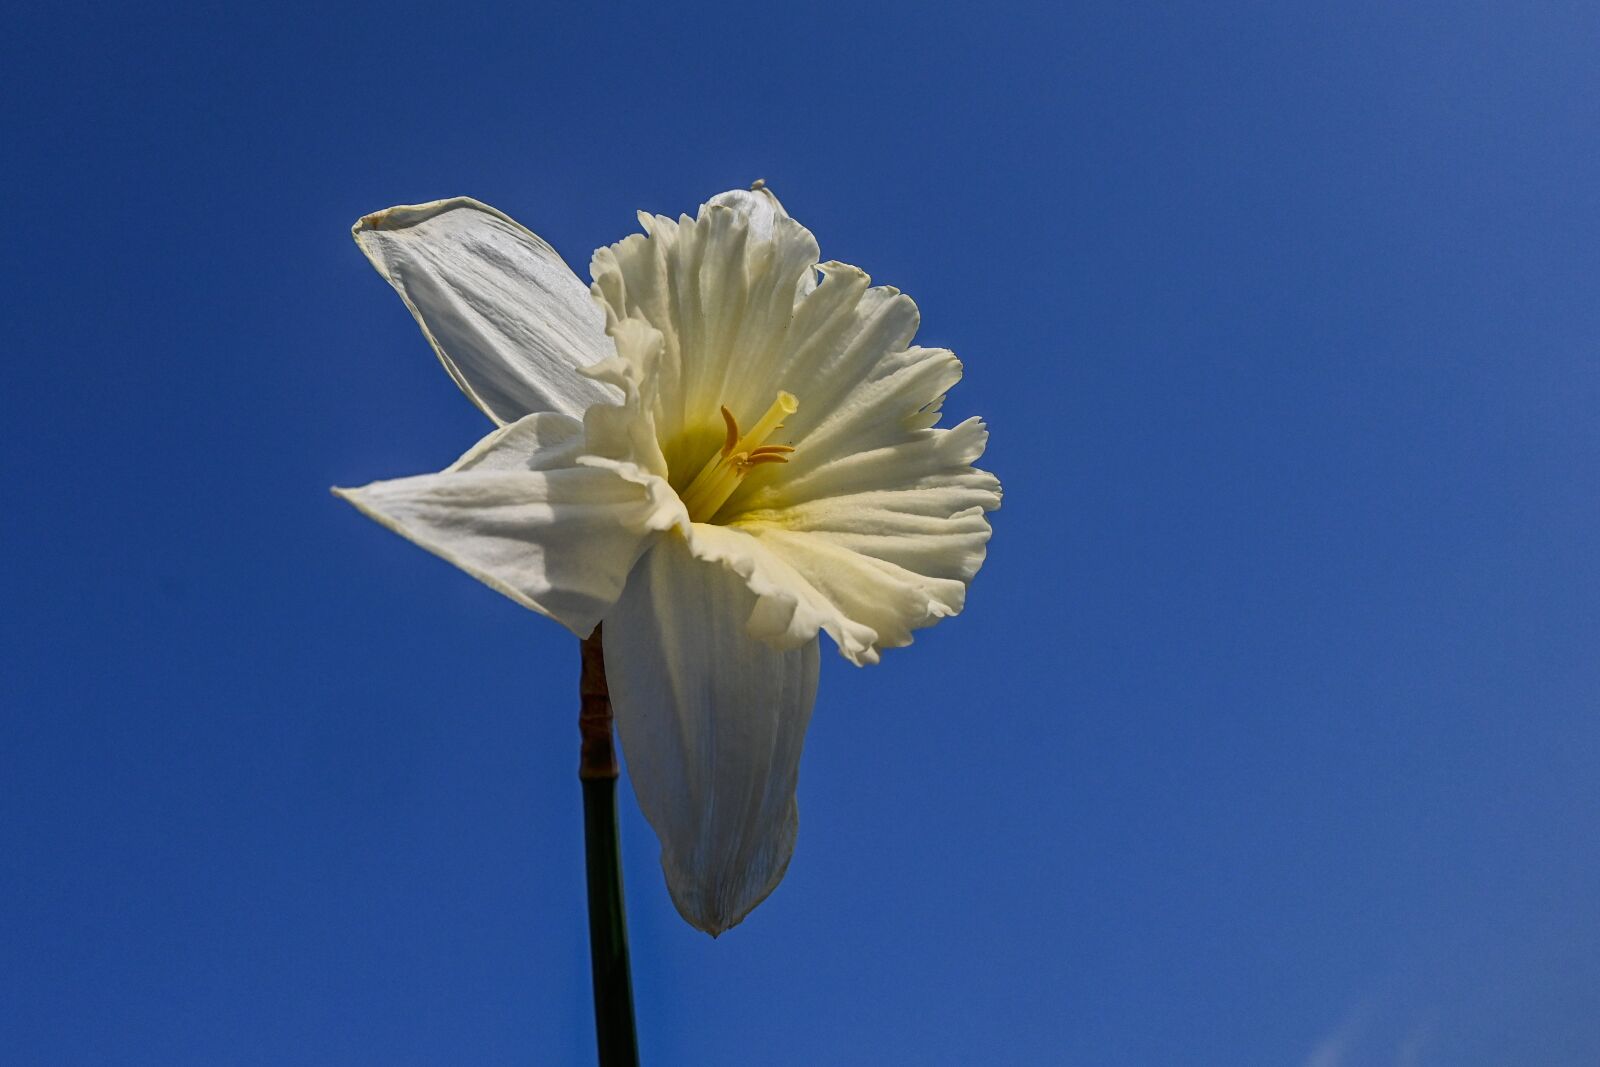 Nikon Nikkor Z DX 16-50mm F3.5-6.3 VR sample photo. Spring flower, garden, nature photography